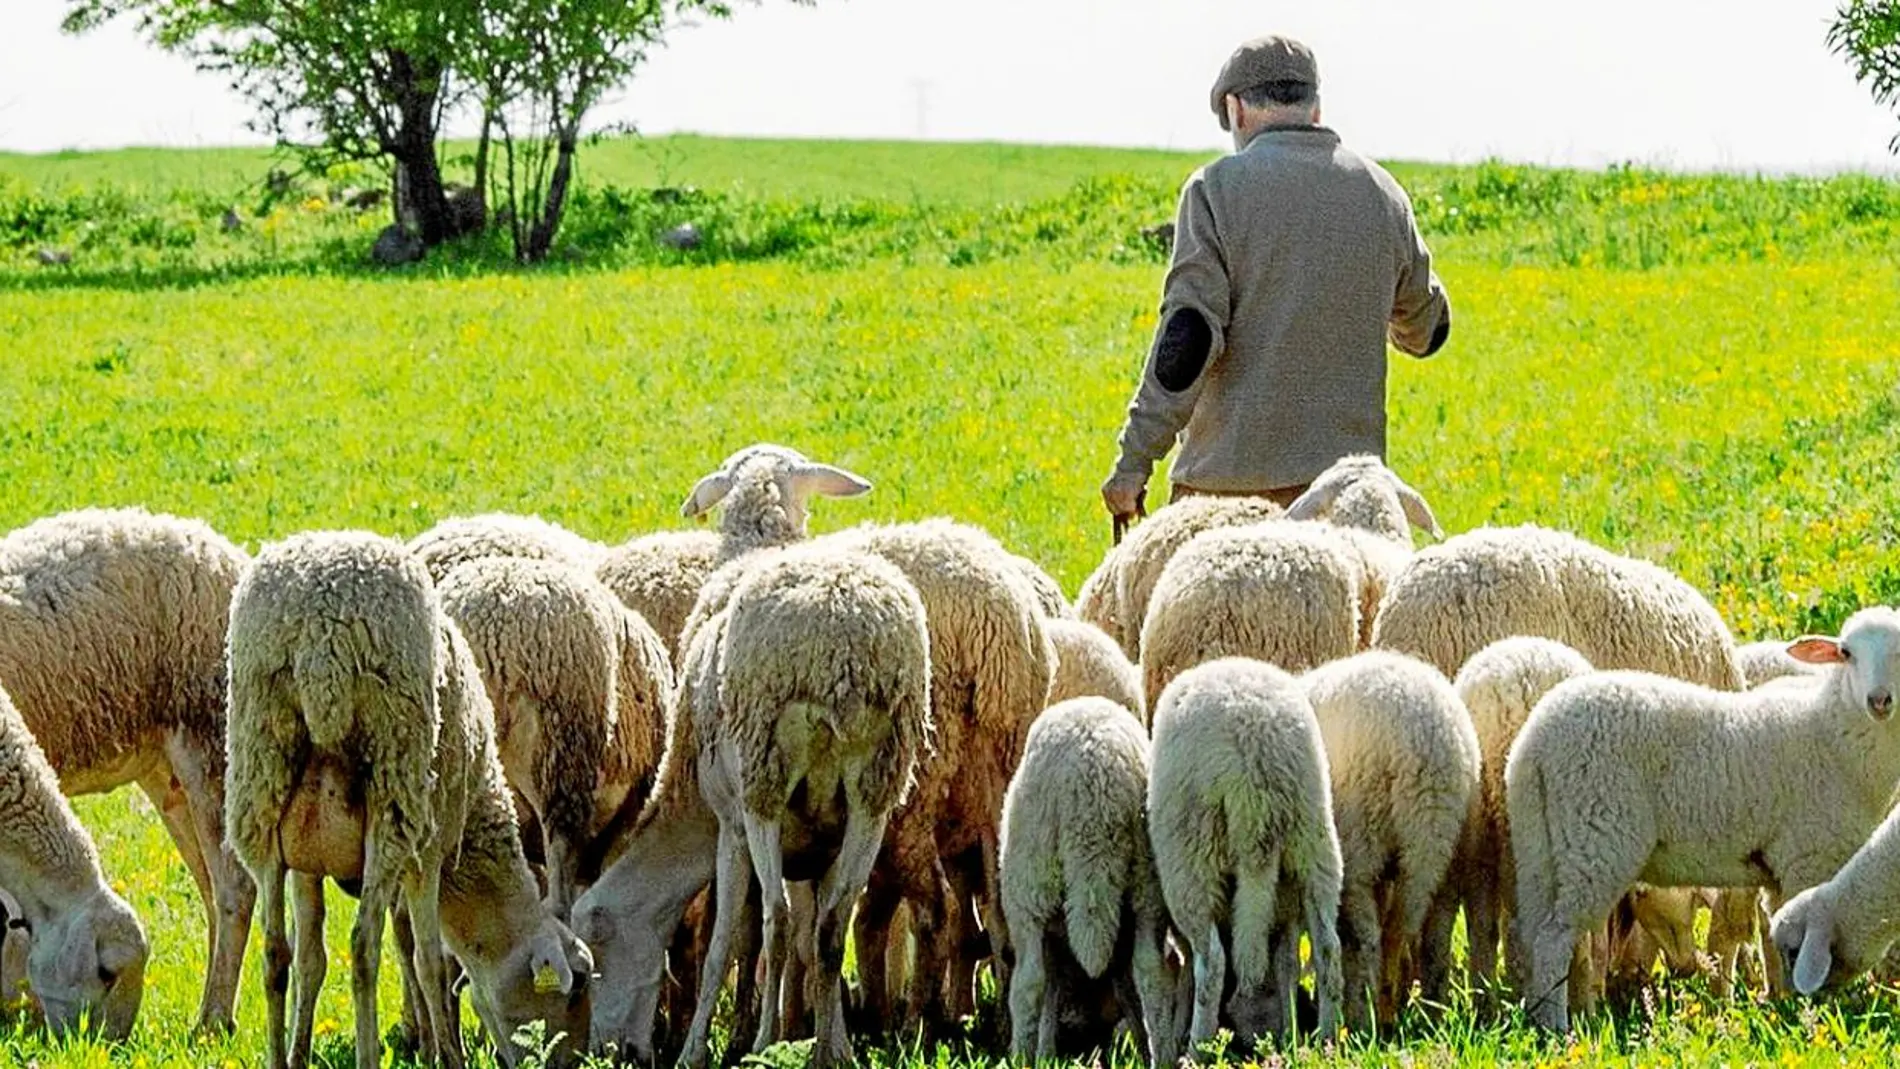 Esta ganadería sigue pastoreando igual que hace siglos. Y esa forma milenaria de hacer las cosas también proporciona enormes beneficios ambientales